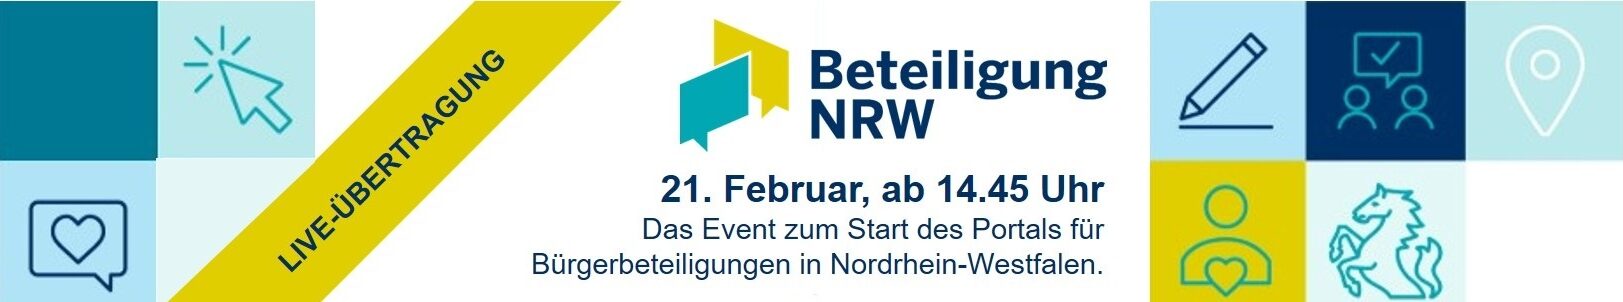 Banner für Live-Übertragung Beteiligung NRW.